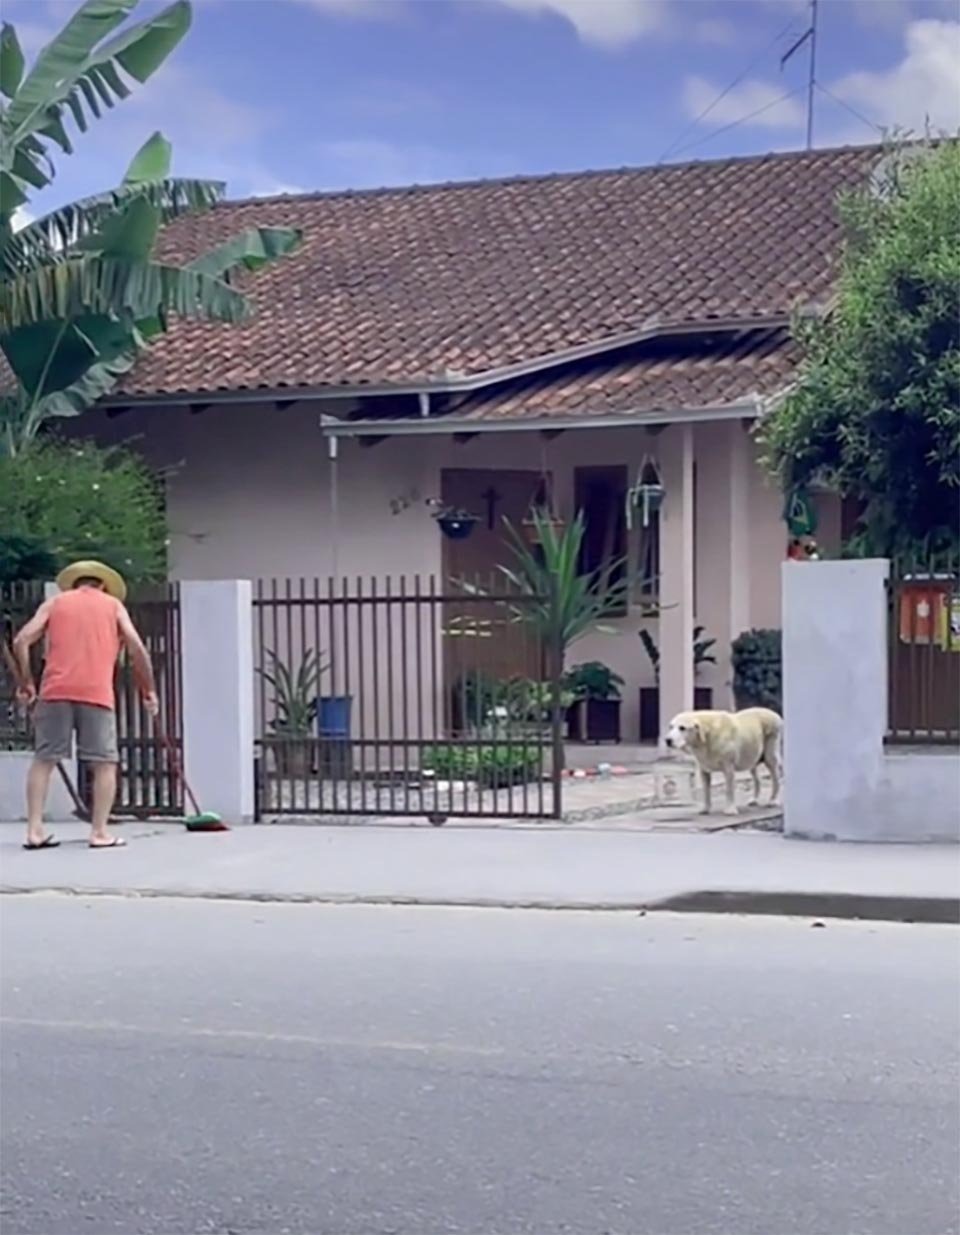 Perro sostiene un balde para ayudar al propietario